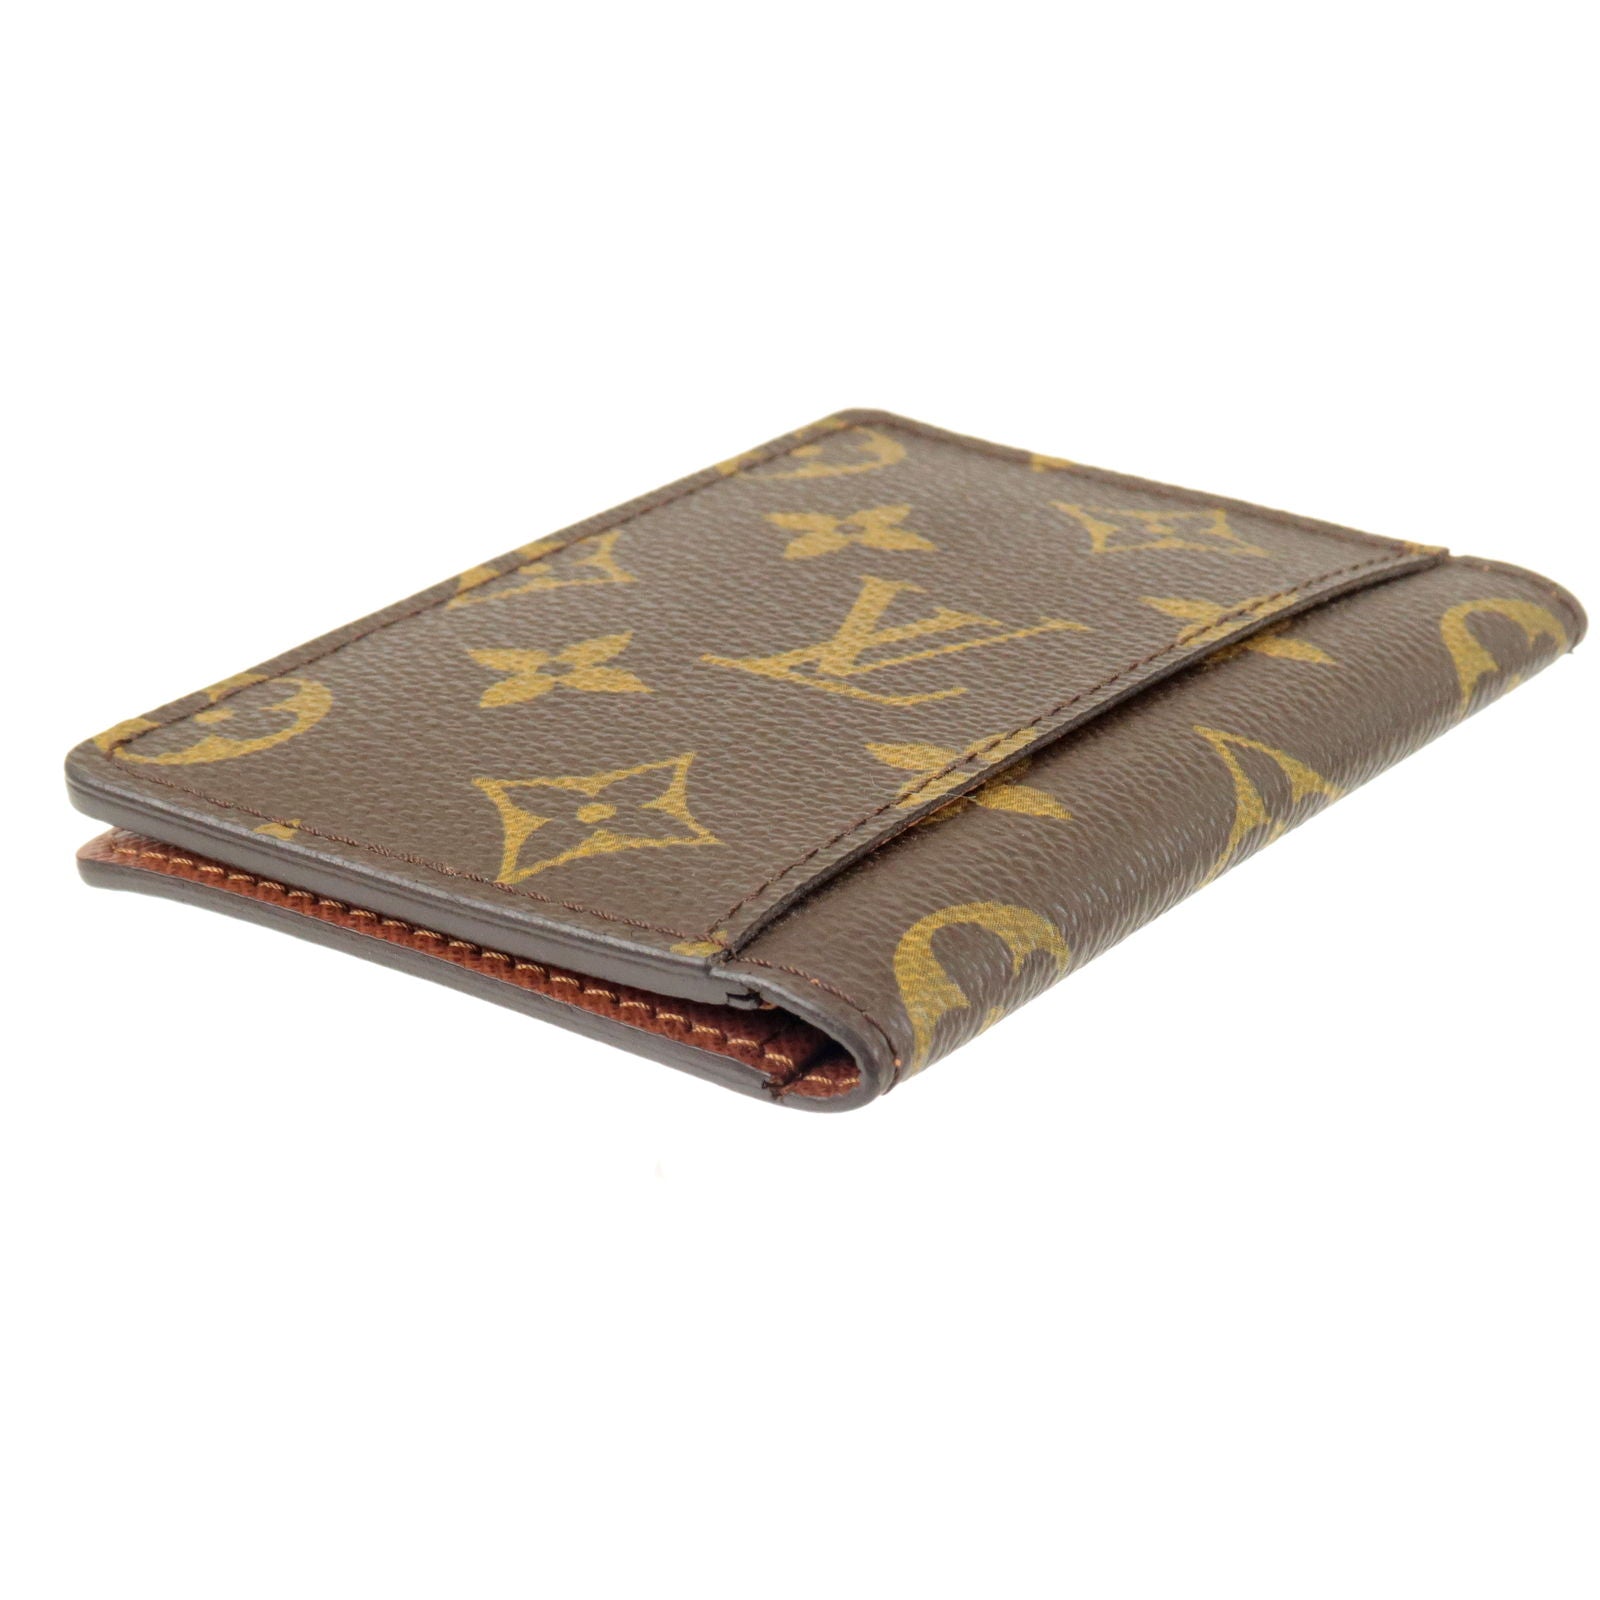 MINT Louis Vuitton Epi Porto 2 Cult Vertical Brown Leather Card Case Wallet